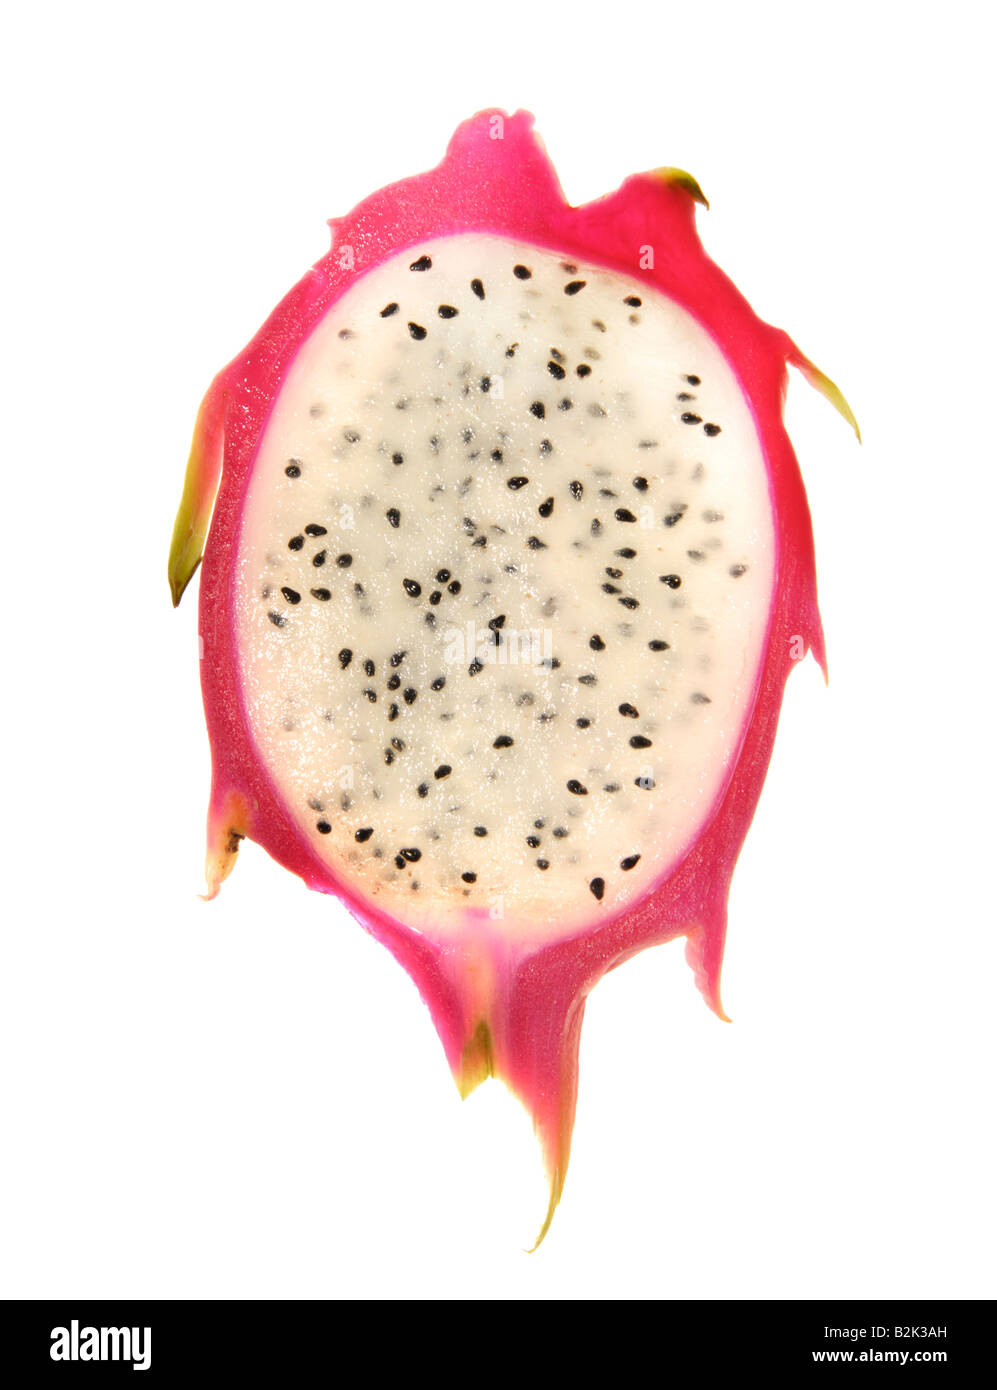 Le pitaya coupé en tranches de fruits coupe Fraise Poire Colombie dragonfruit fruit du dragon pink transparent pinky a souligné les points seed Banque D'Images